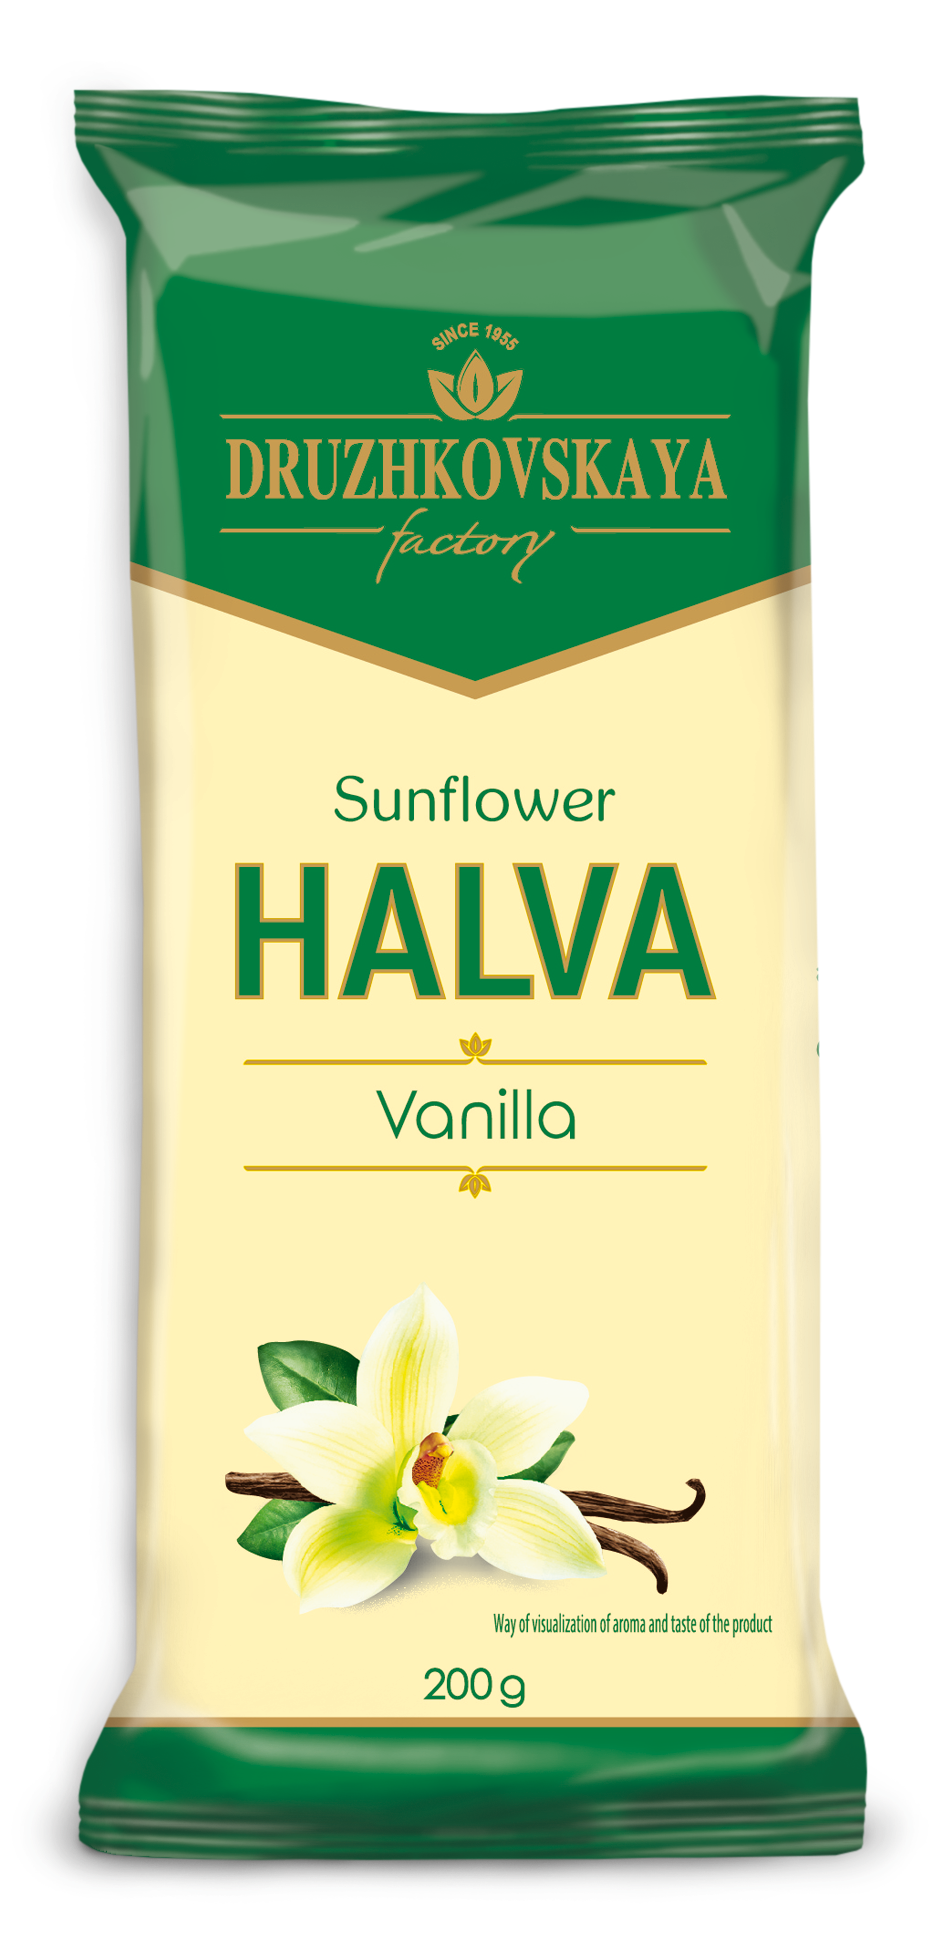 Sunflower Halva Vanilla Packed in Flow-pack, 200 g